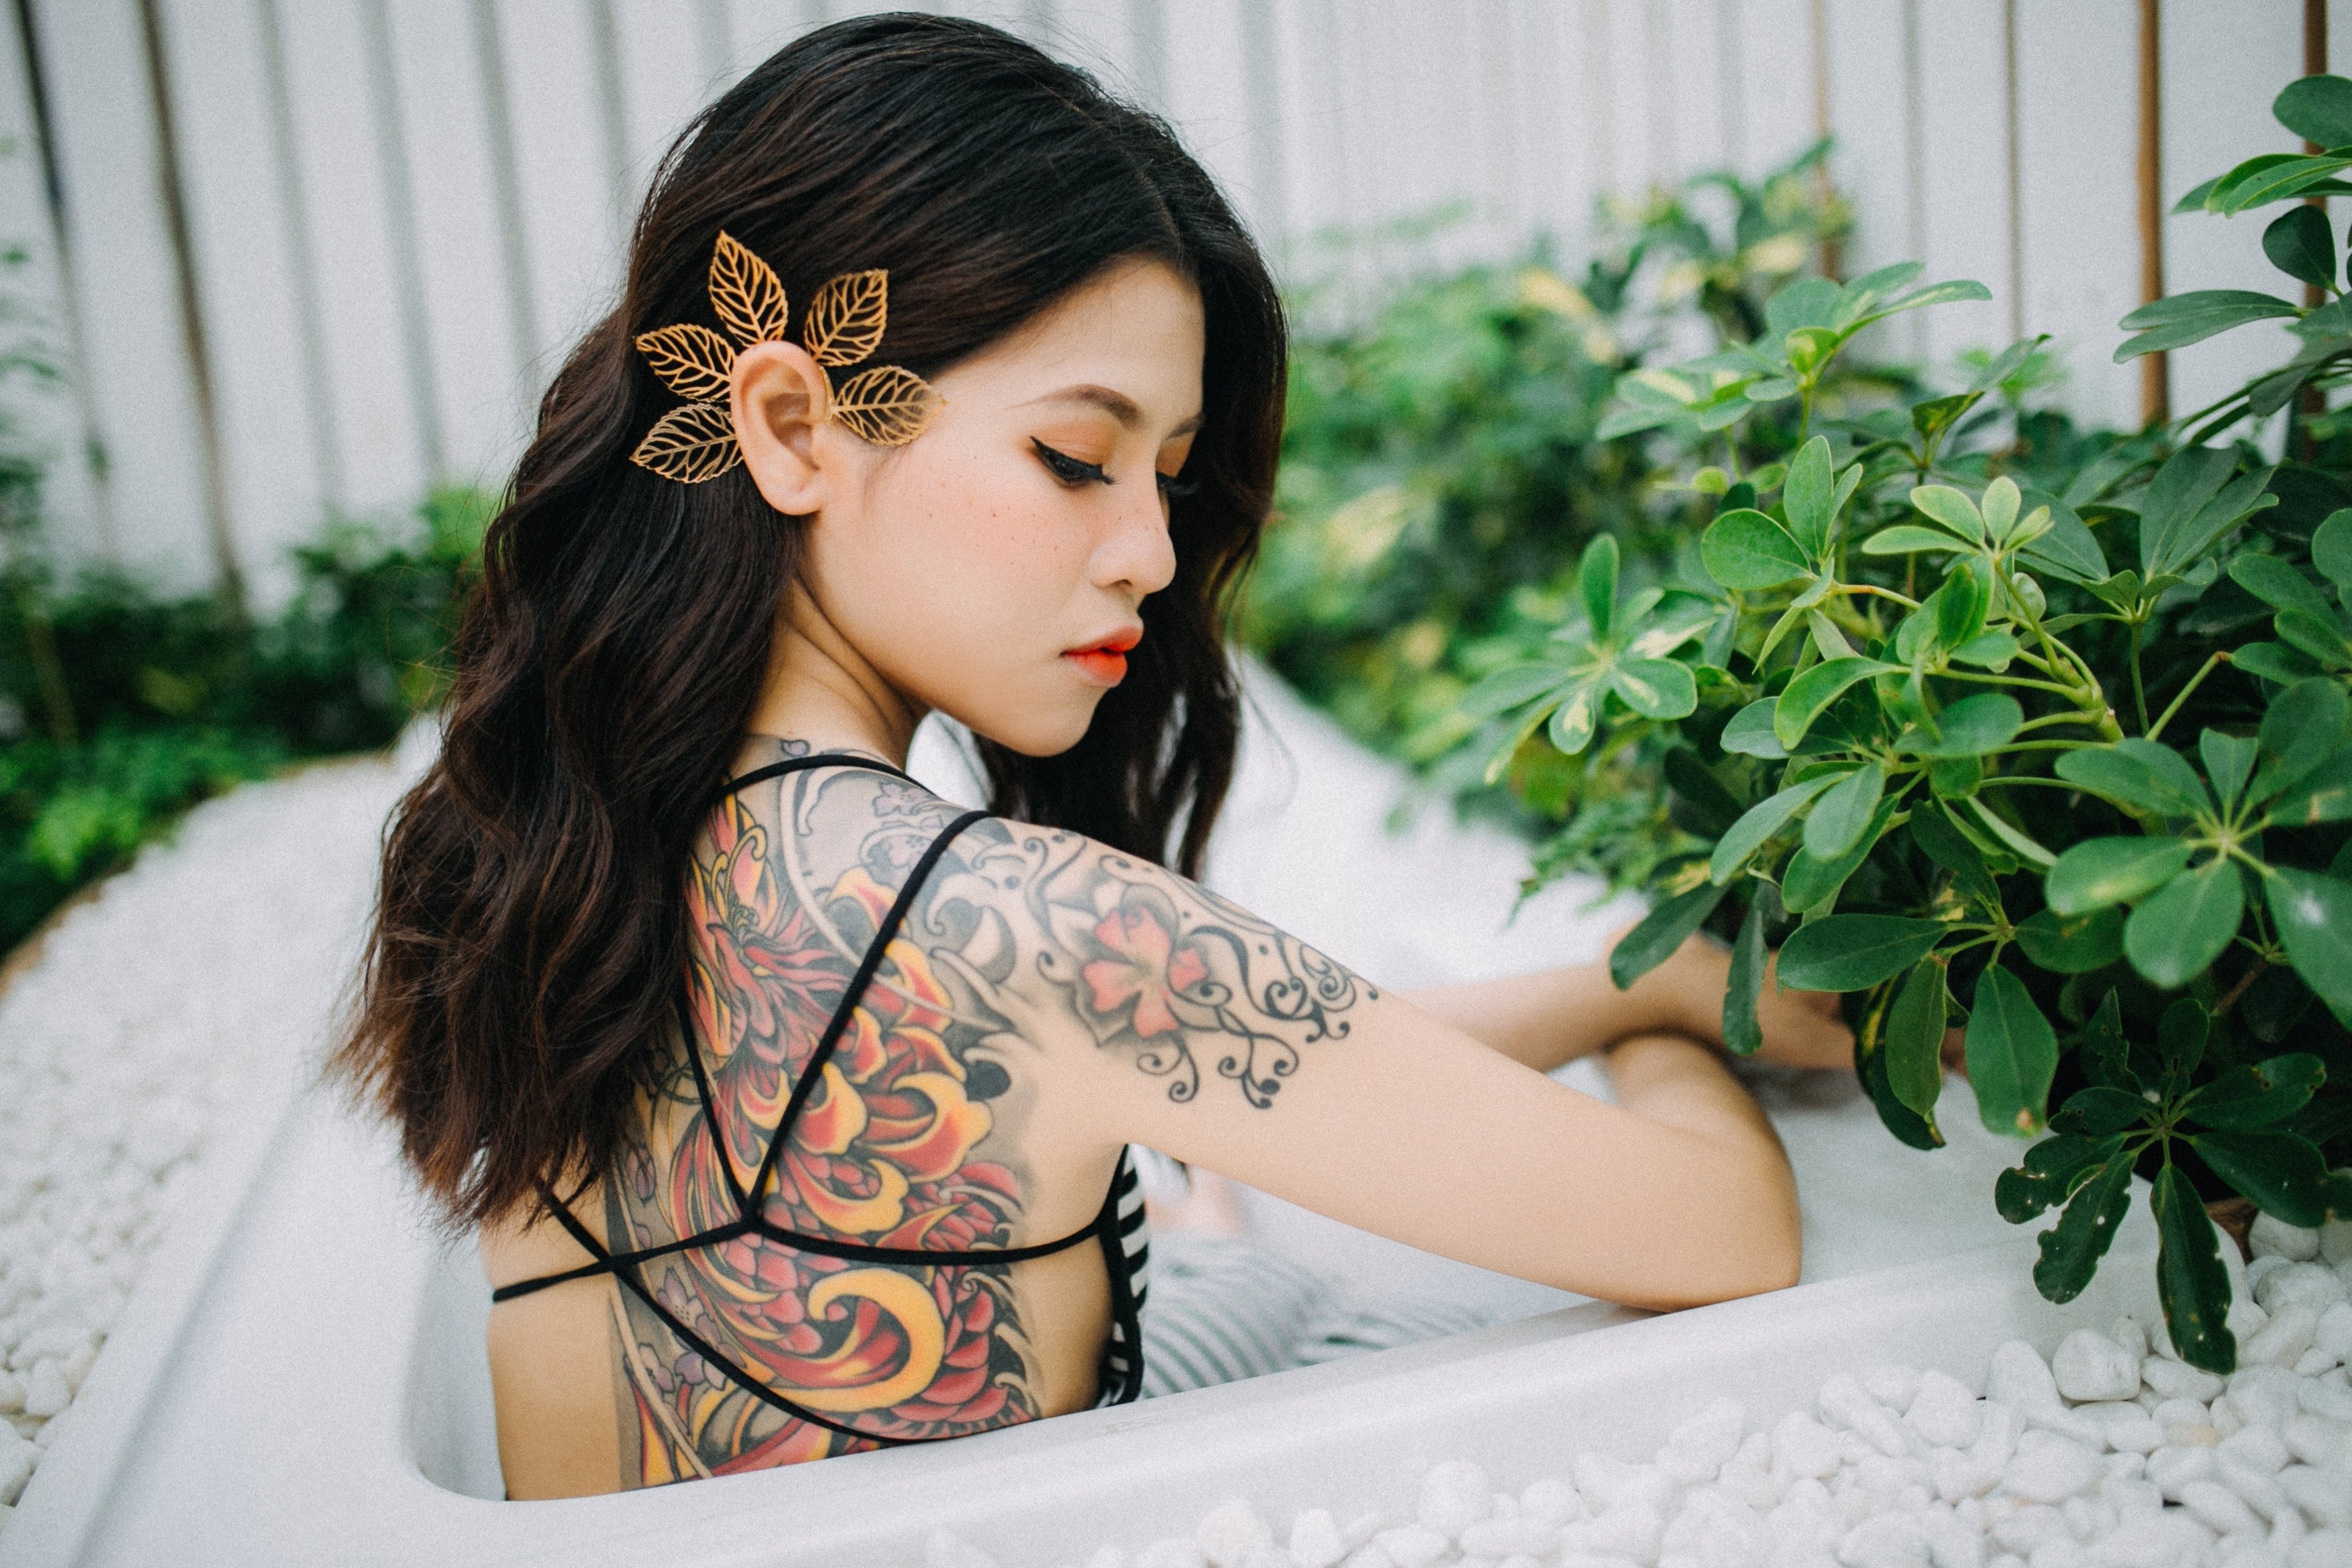 los mejores diseños de tatuajes japoneses en bonitas imagines, espalda tatuada con bonitos simbolos de la cultura japonesa 